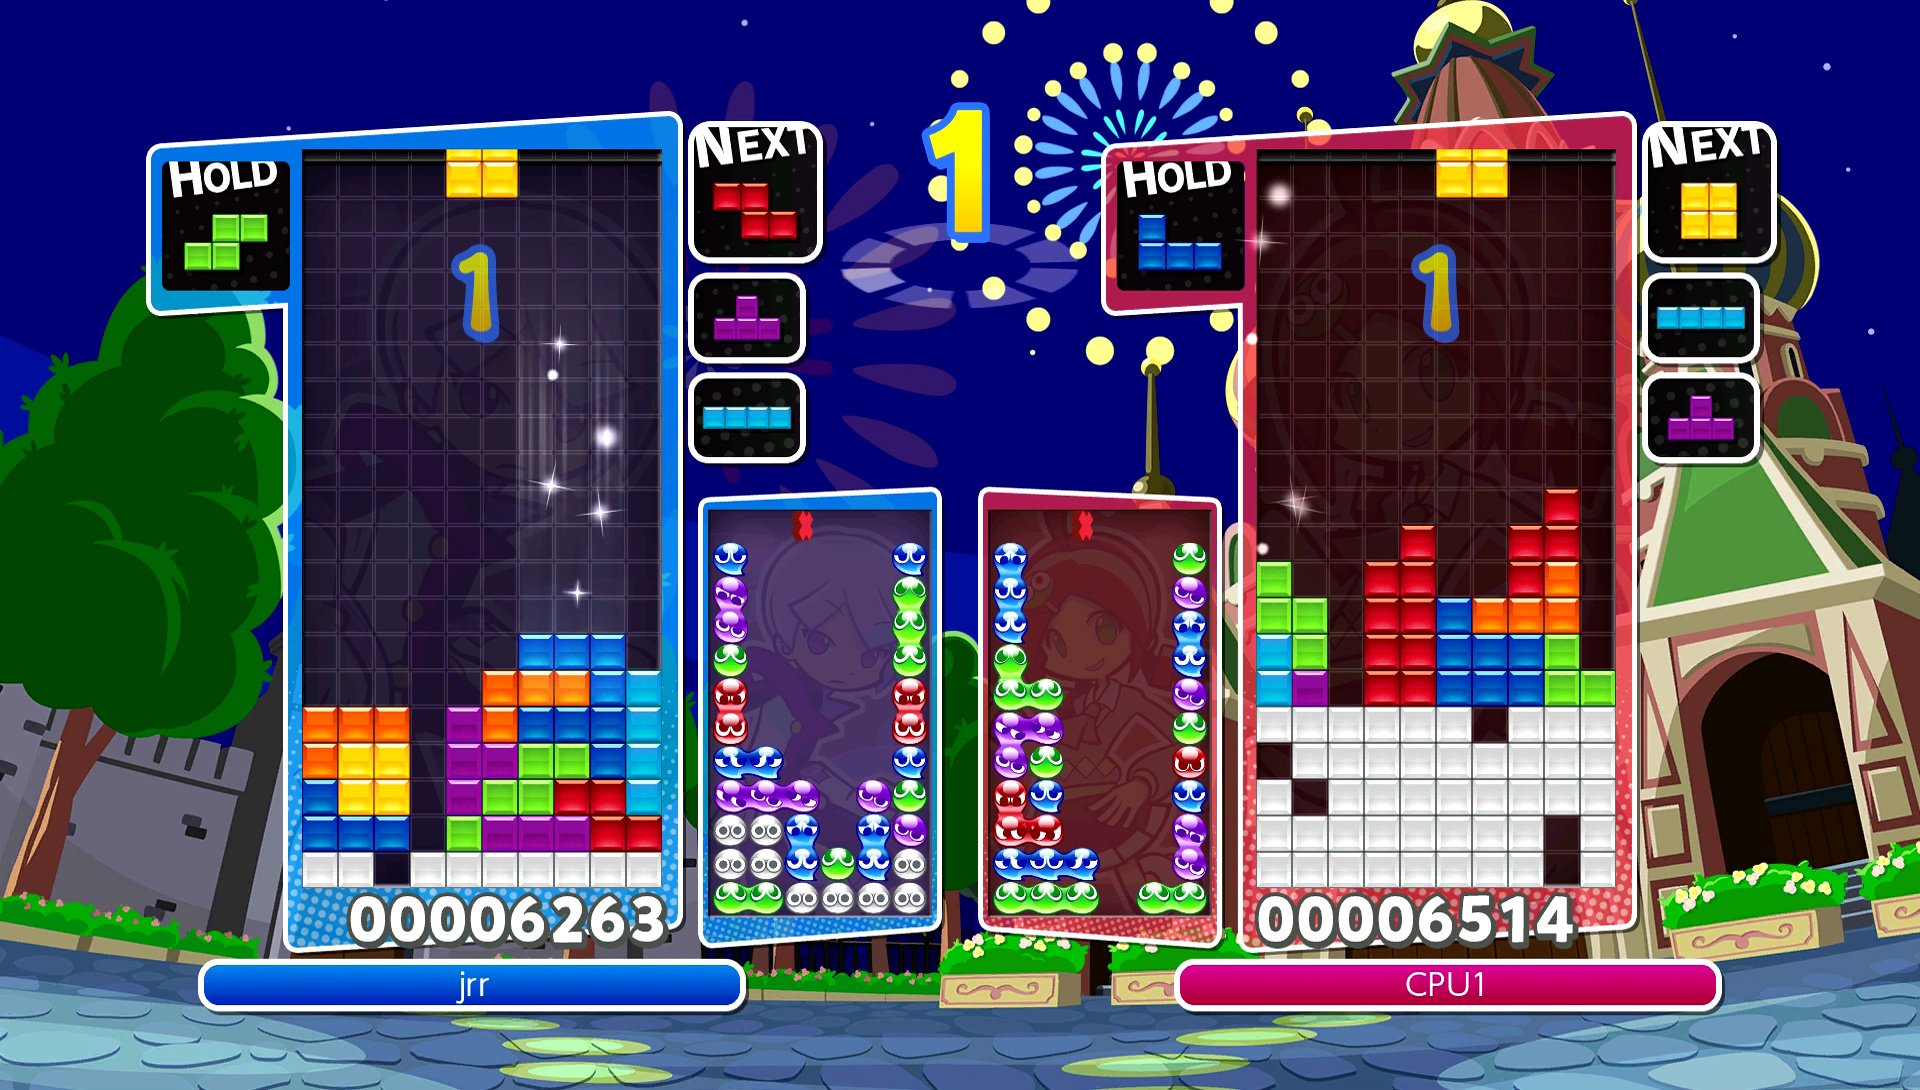 Puyo Puyo Tetris (Nintendo Switch) Game Profile | News, Reviews, Videos